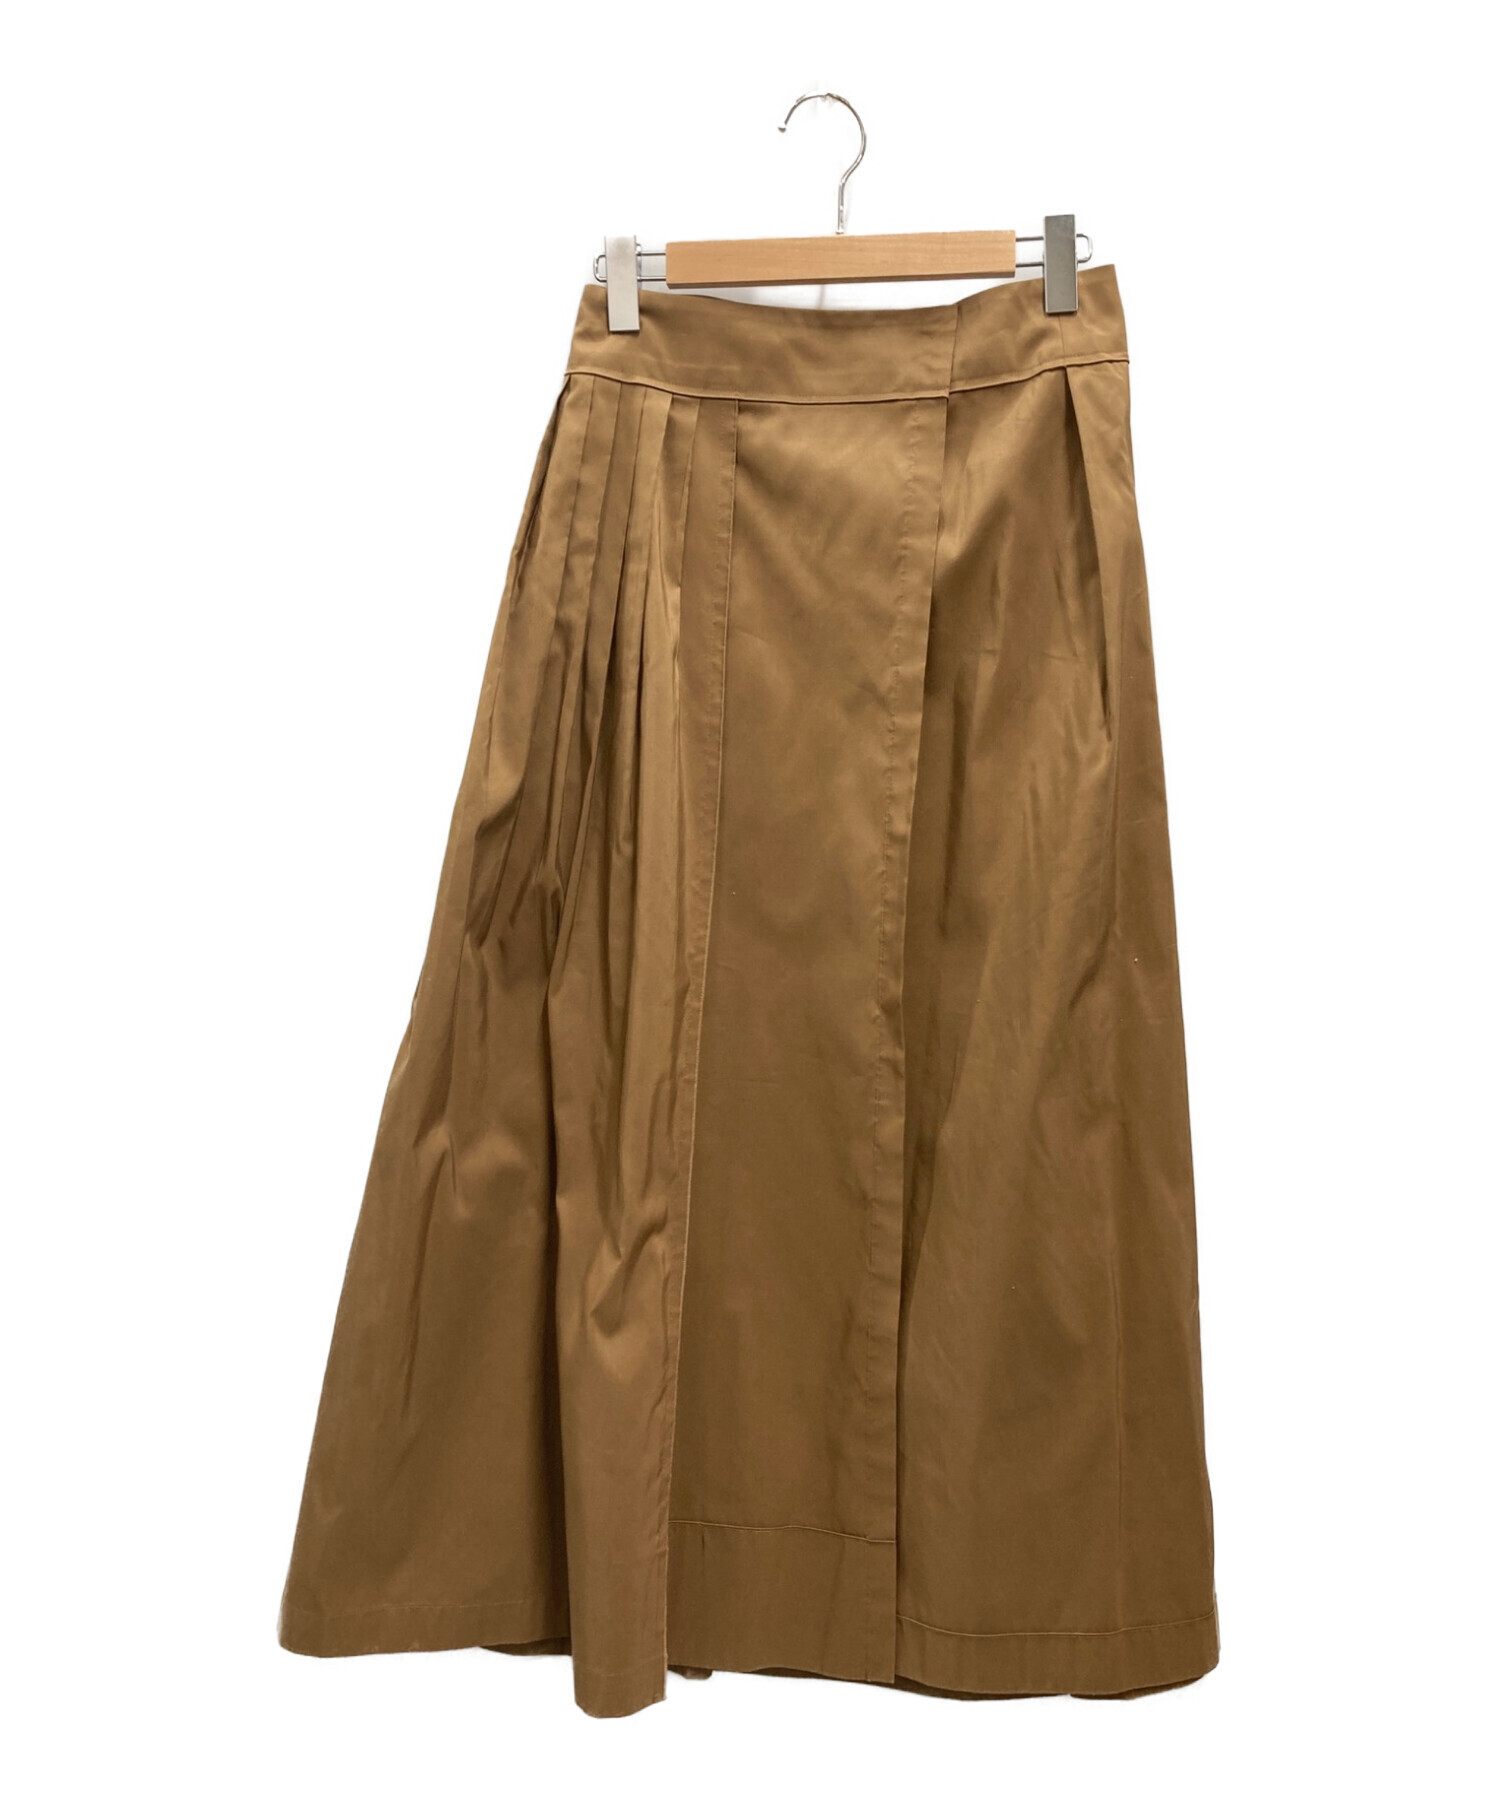 ウエスト33cmhumoresque  tiered skirt  ユーモレスク